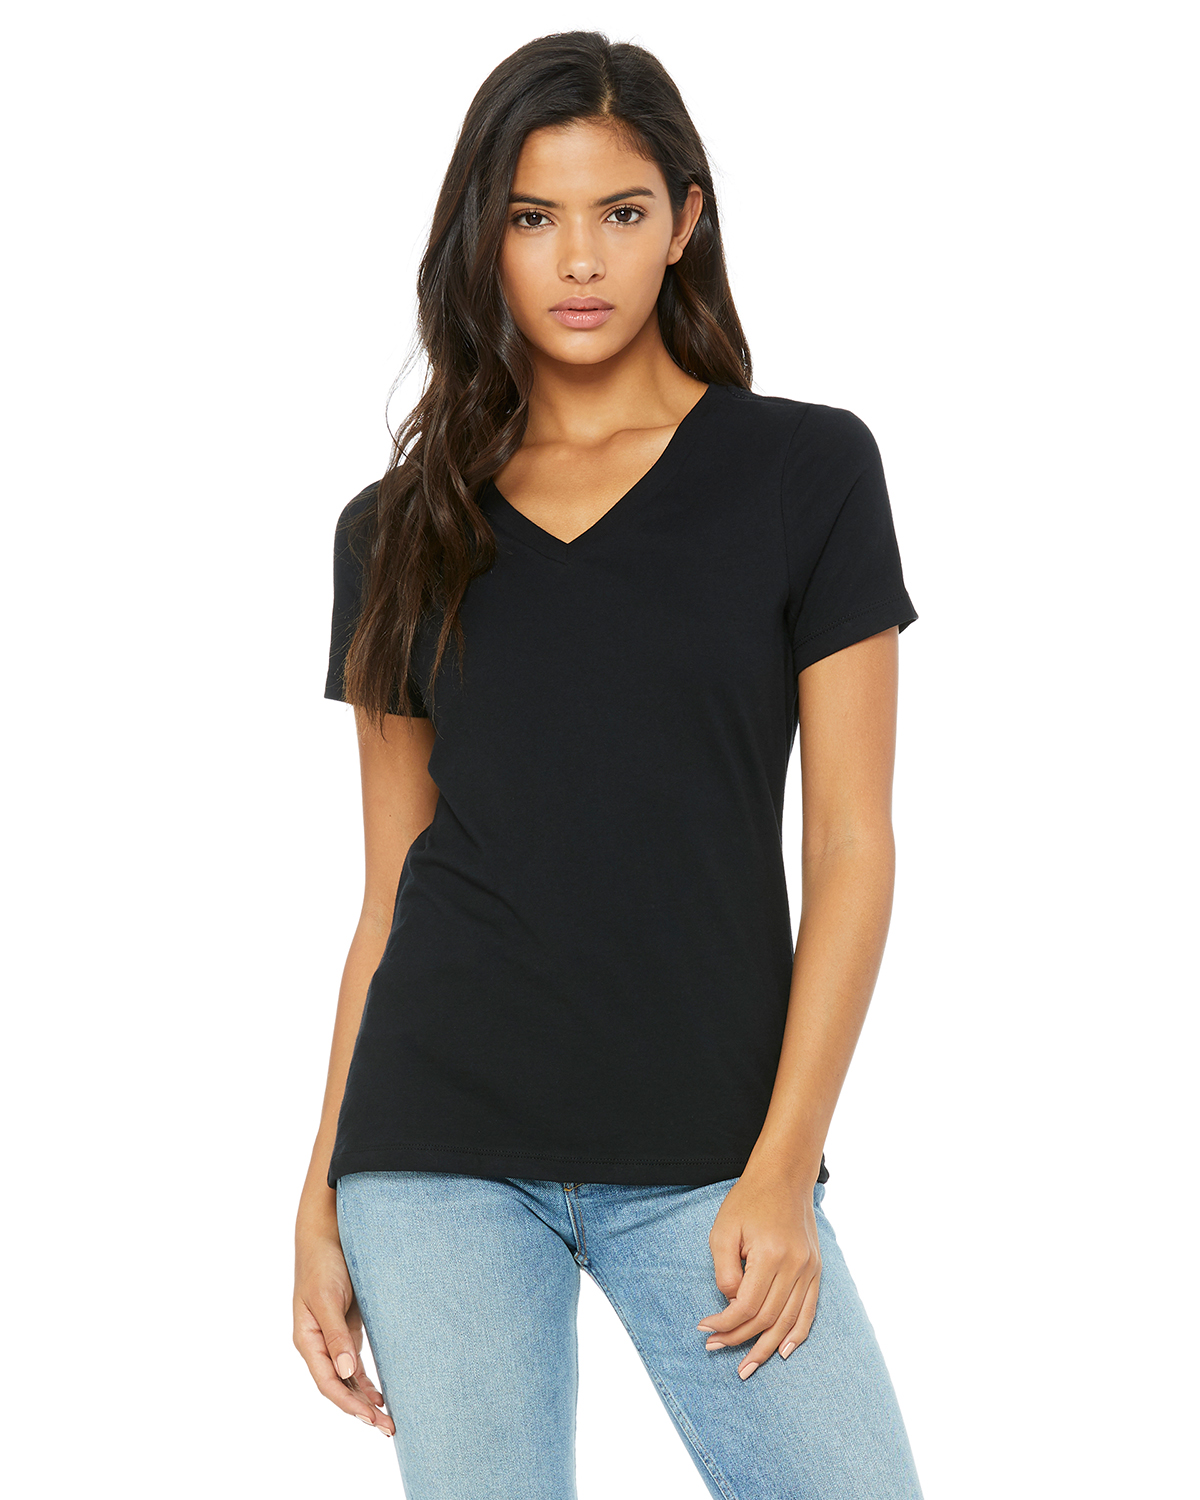 Bella + Canvas 6405, Women's Relaxed Jersey Short Sleeve V-Neck T-Shirt